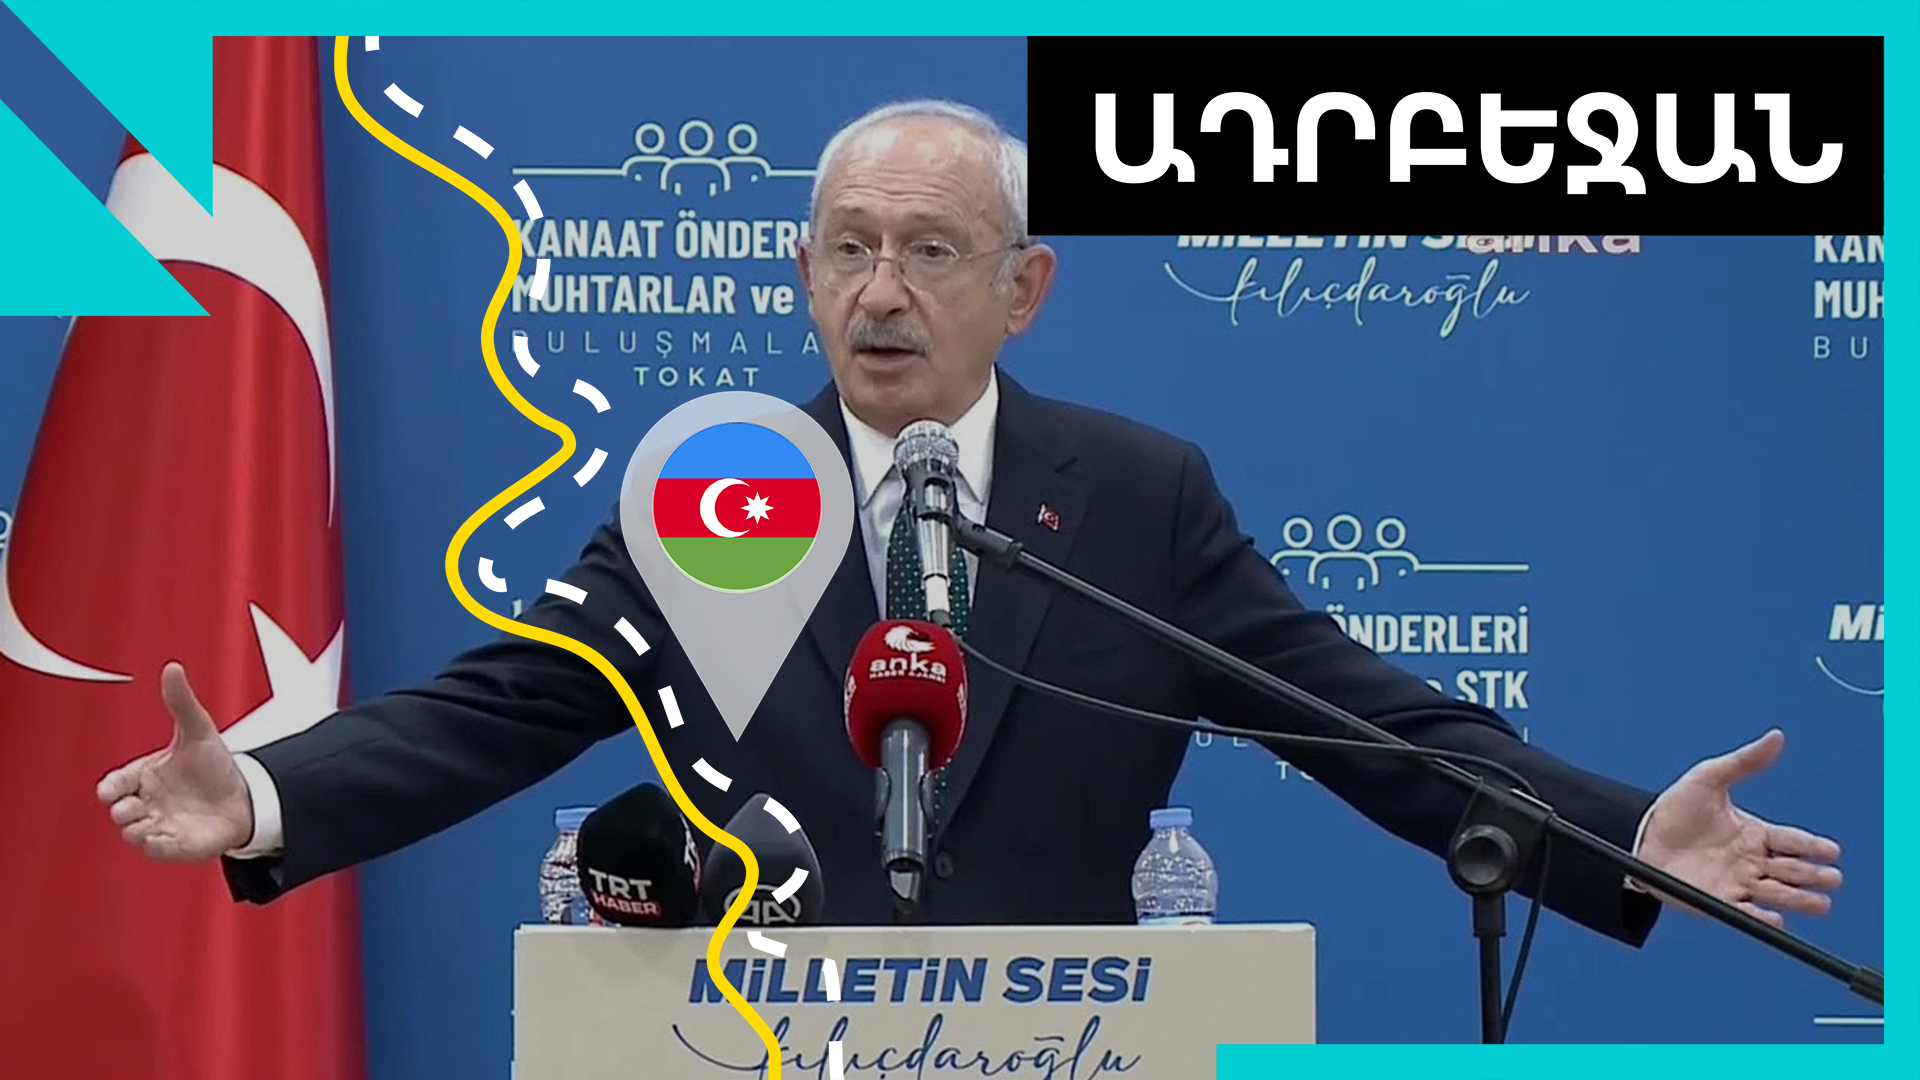 Ադրբեջանը չկա Թուրքիայի գլխավոր ընդդիմադրի քարտեզում